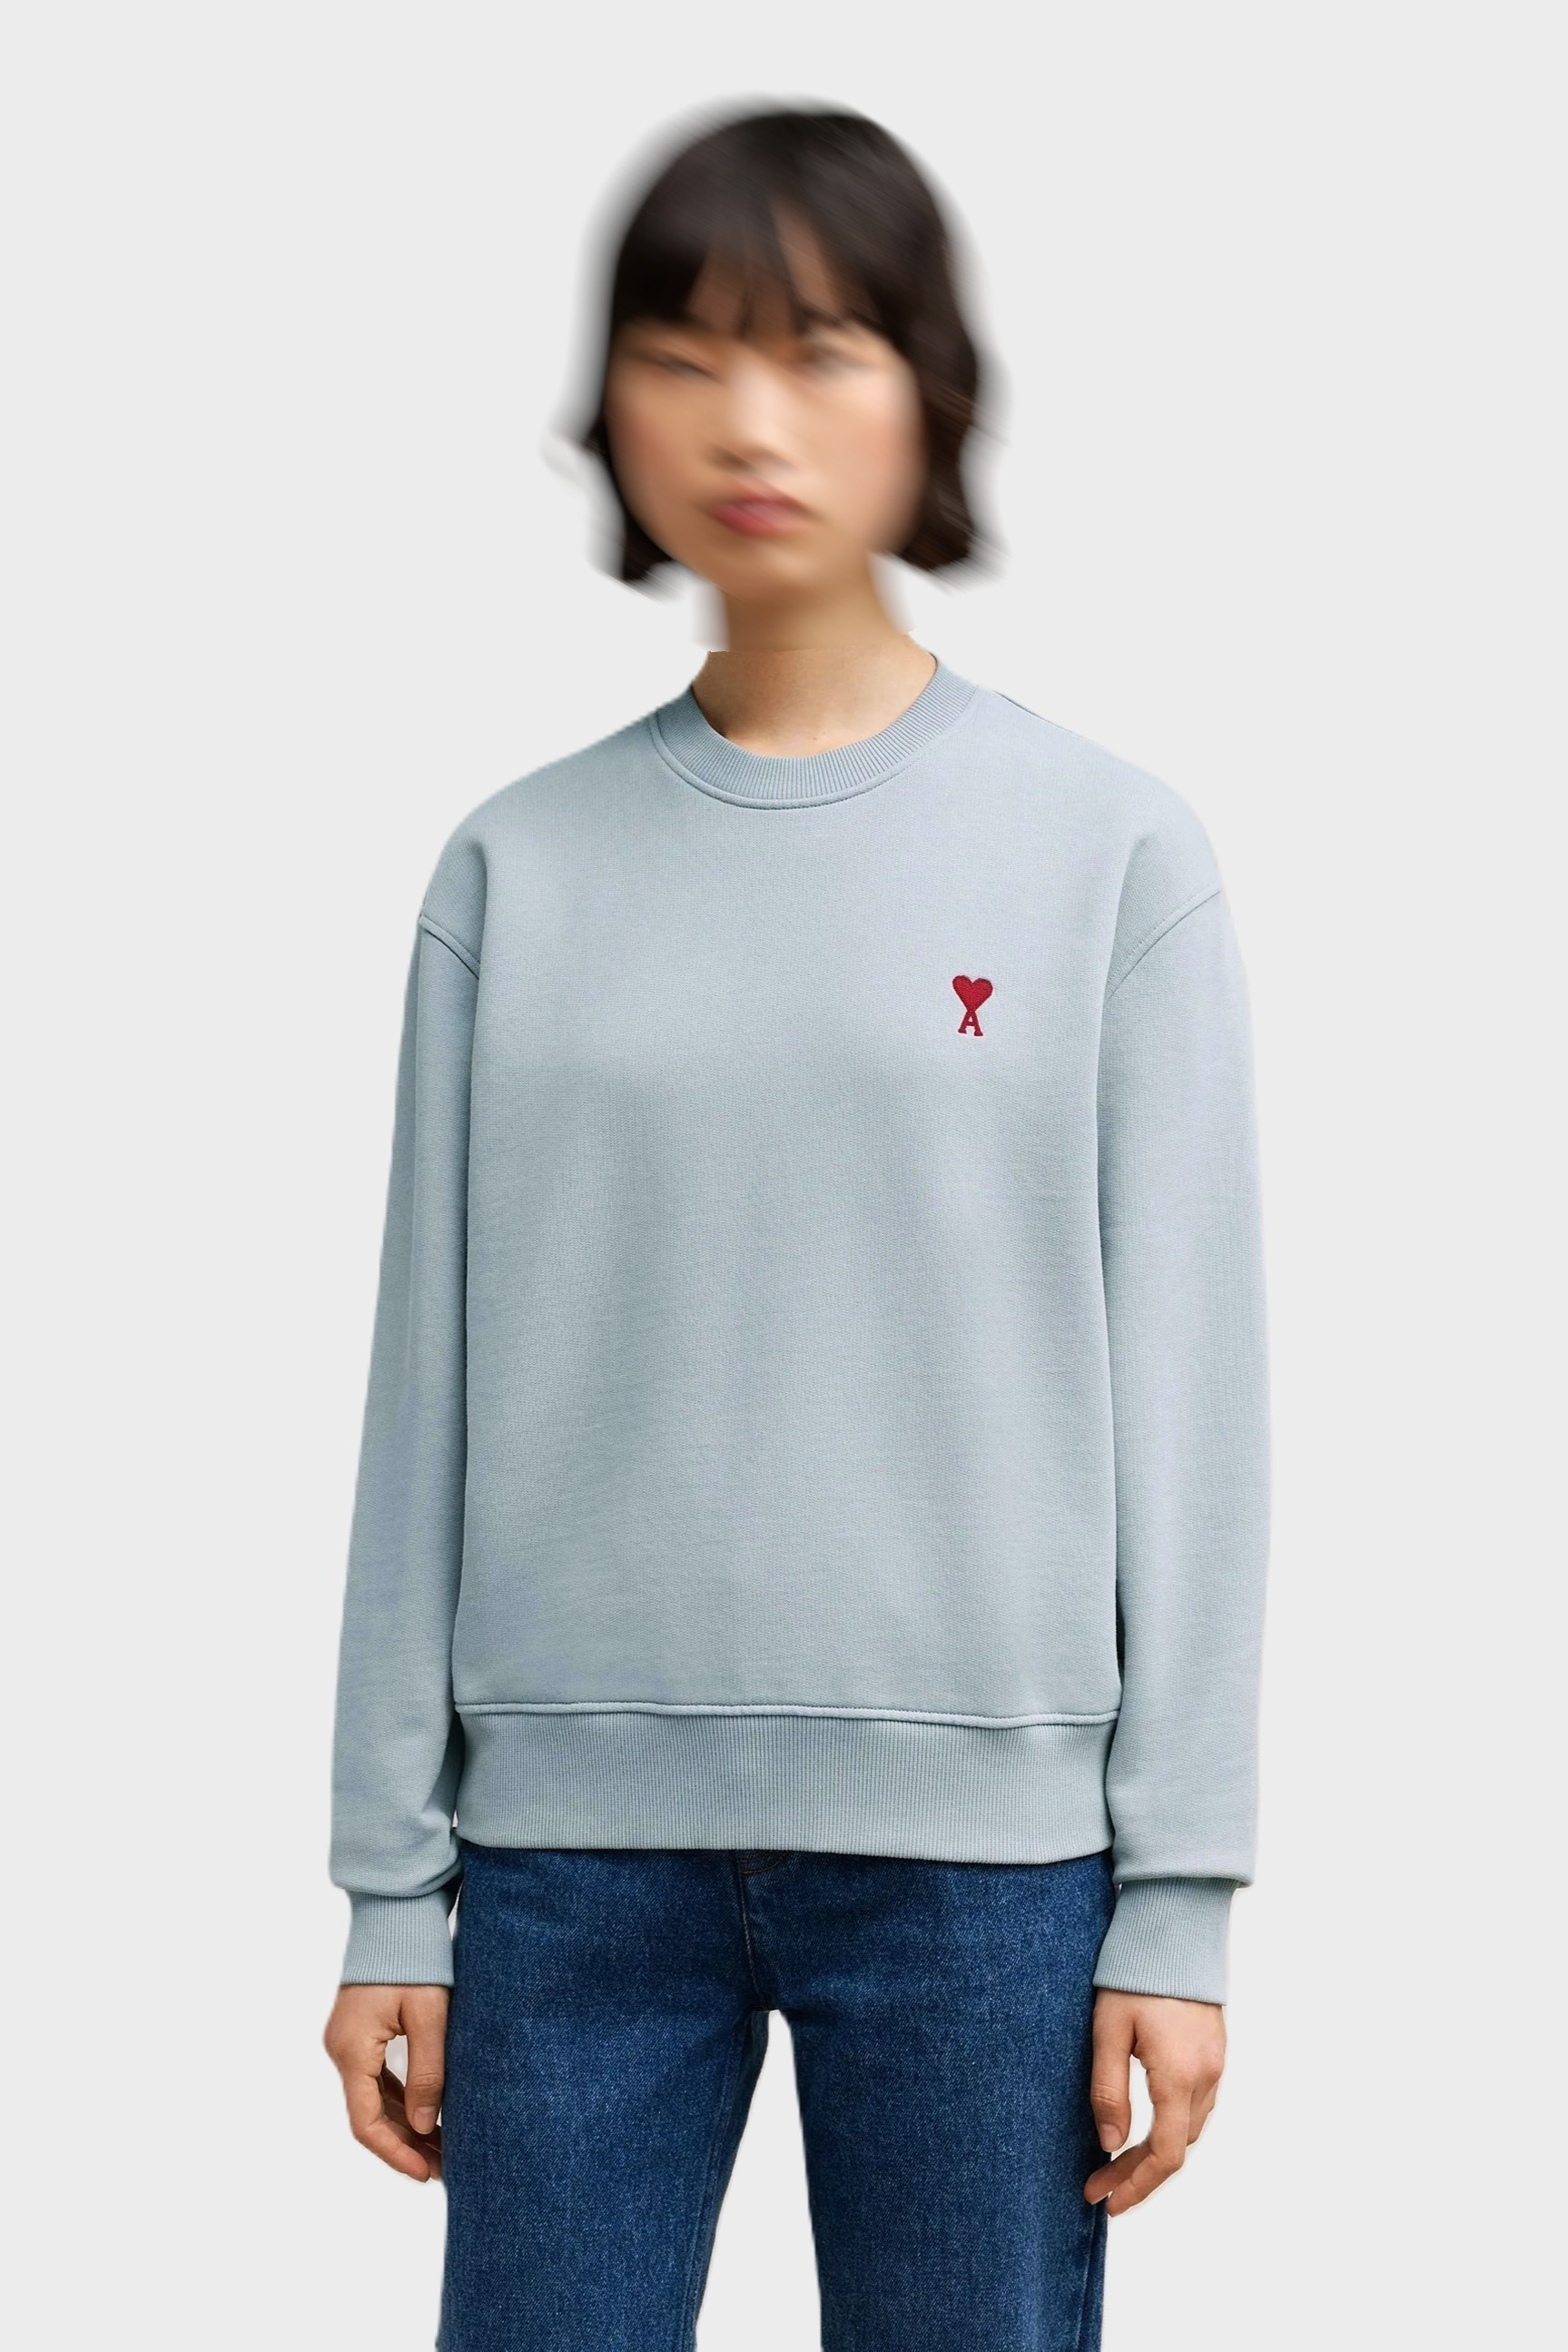 AMI PARIS de Coeur Molleton Sweatshirt in Clay Blue/Red